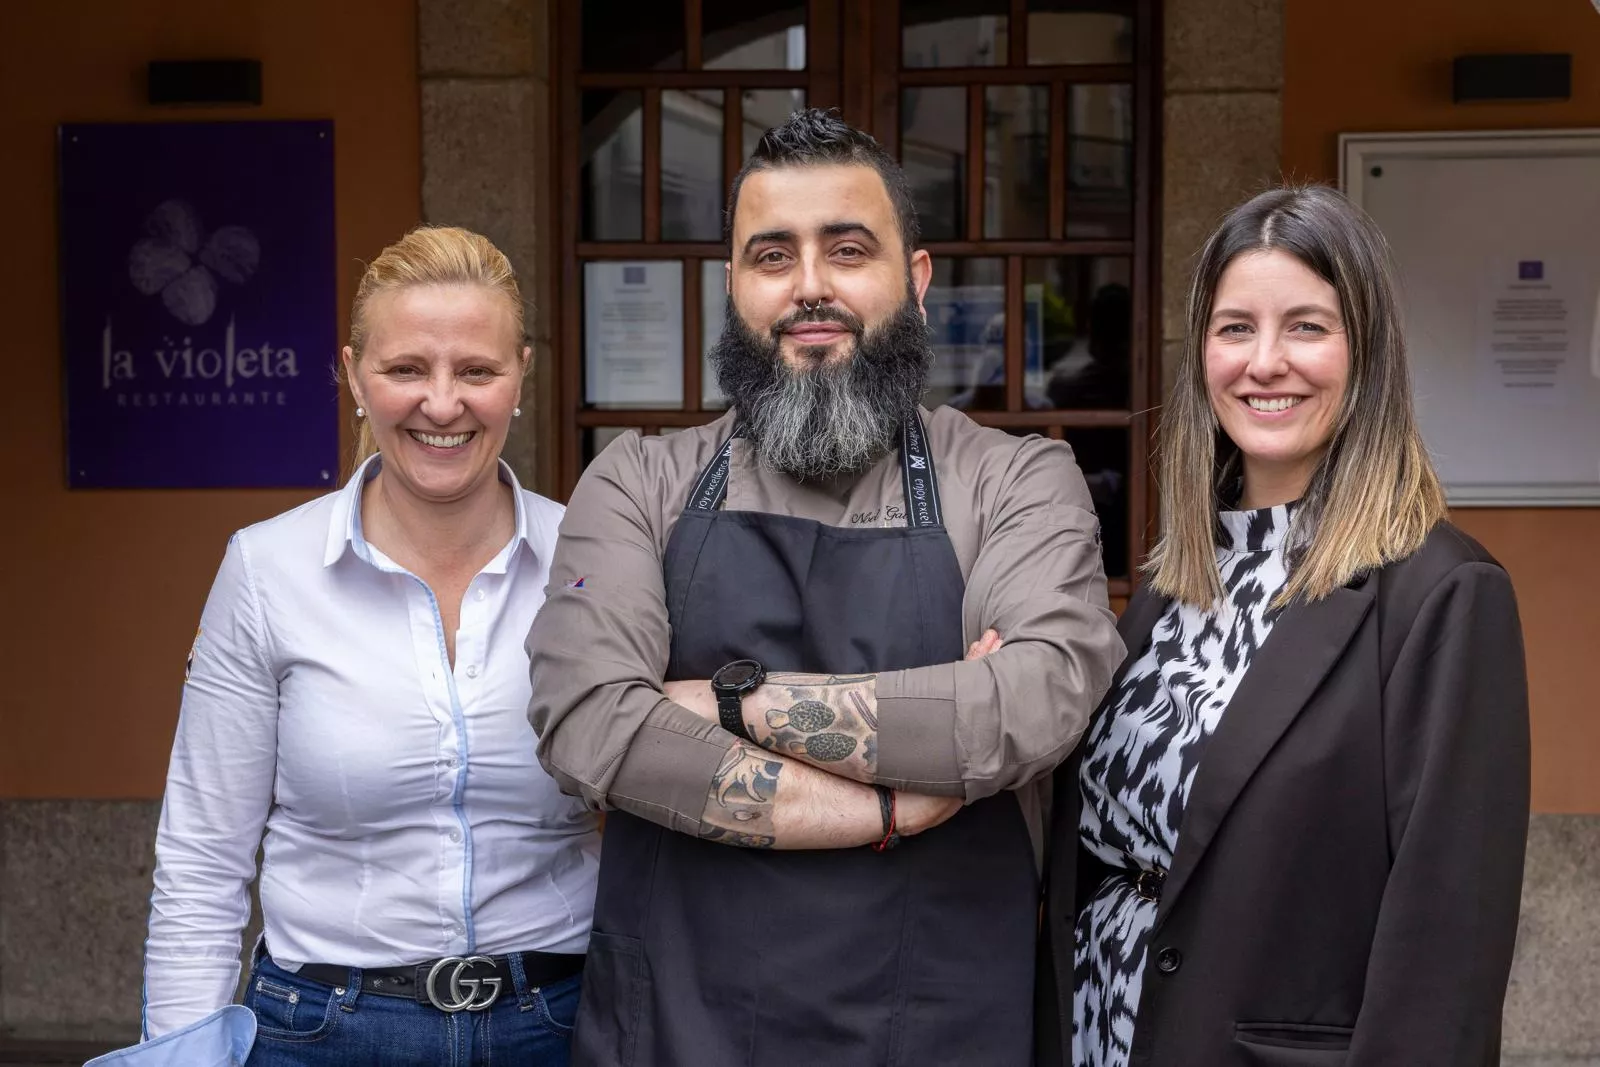 El Restaurante La Violeta de Ponferrada presenta nueva oferta gastronómica con el cocinero berciano Noel Gallego 